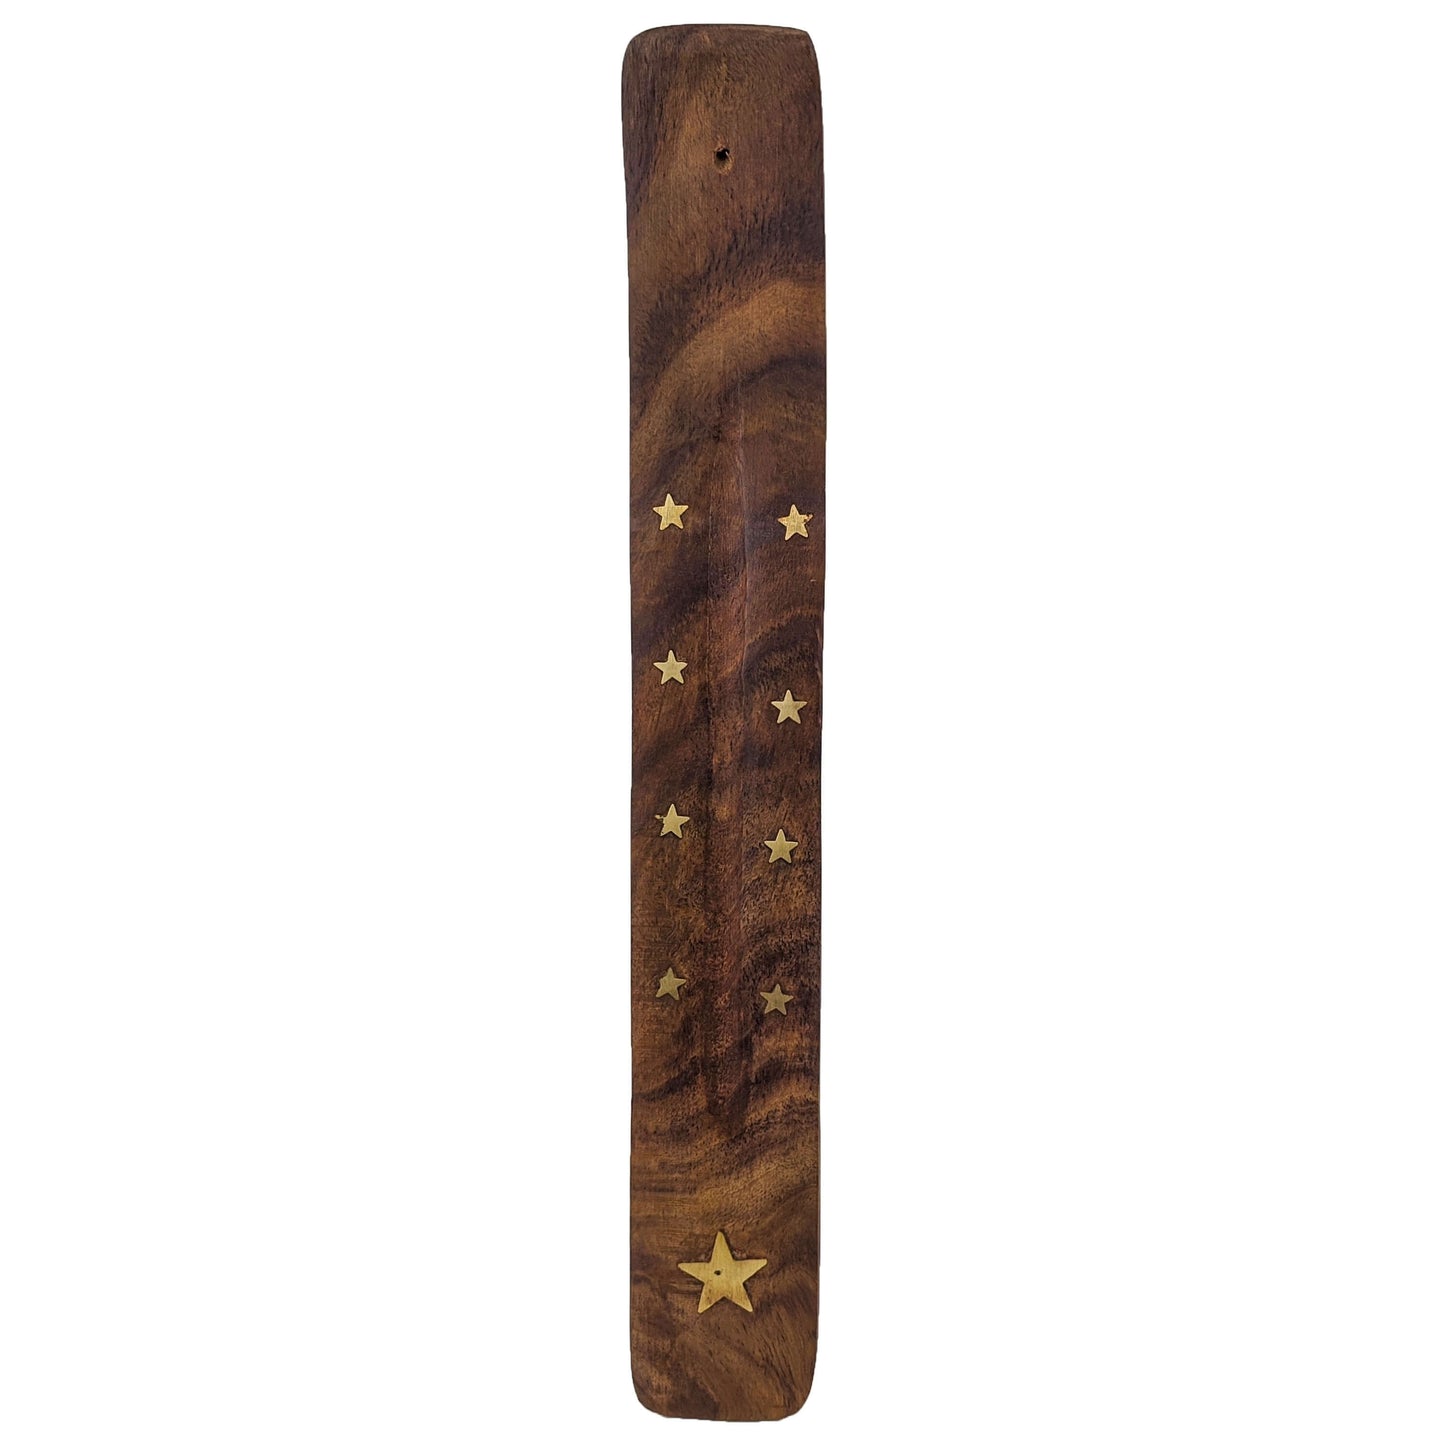 10" Wood Incense Burner & Ash Catcher, Stars Design